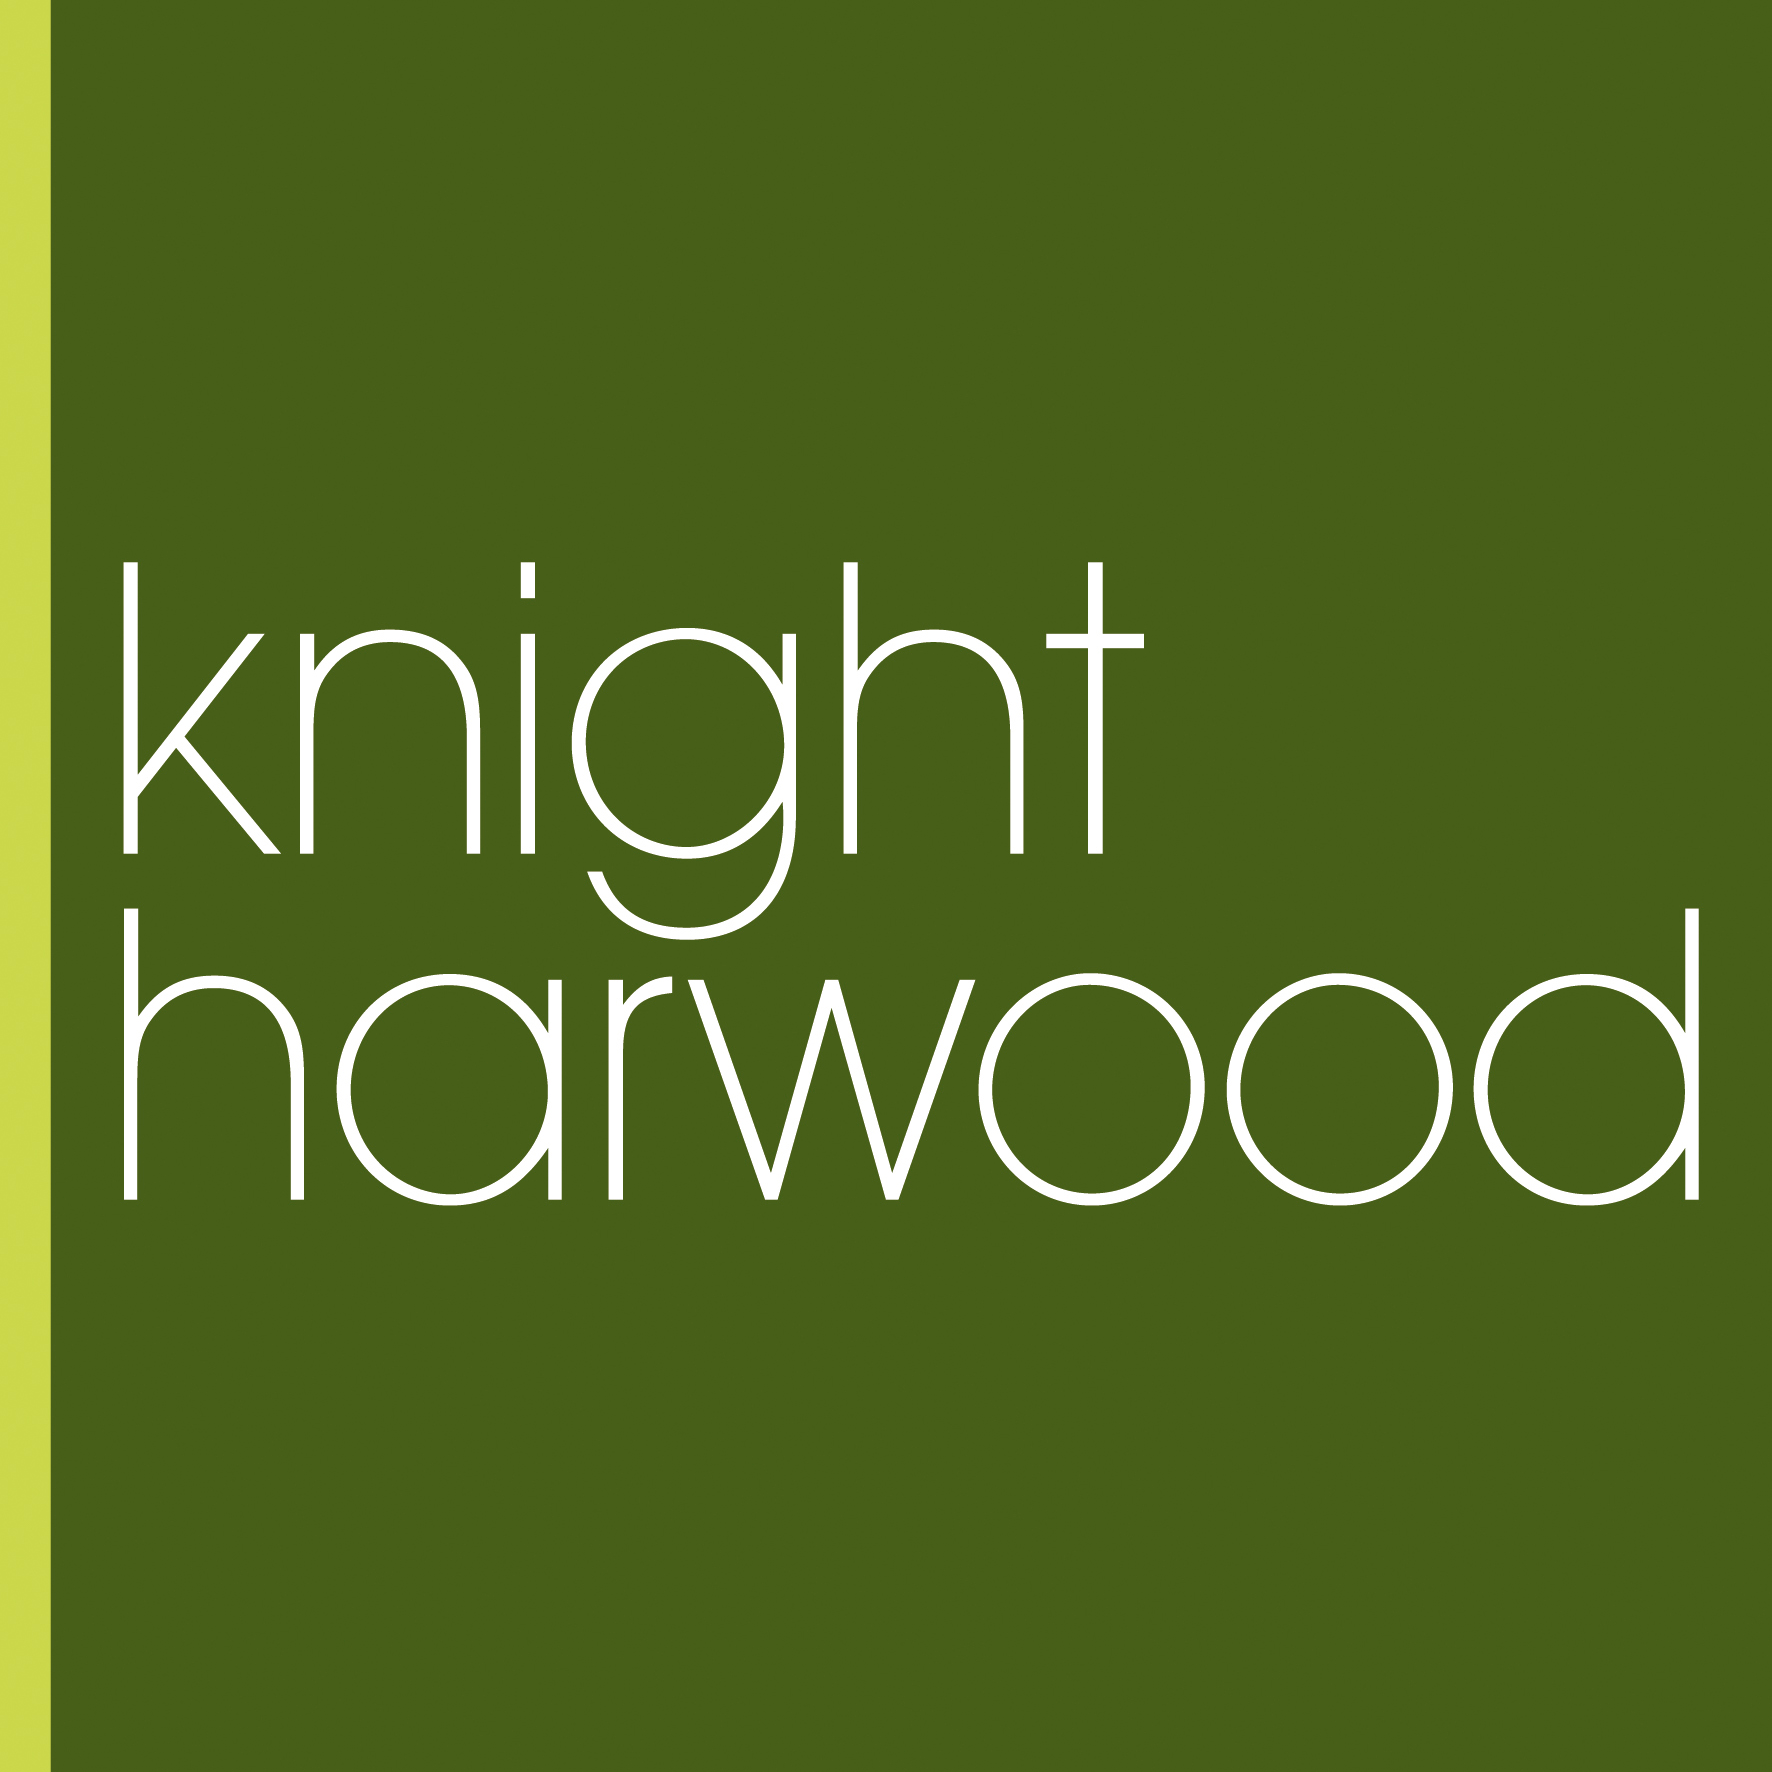 Knight Harwood